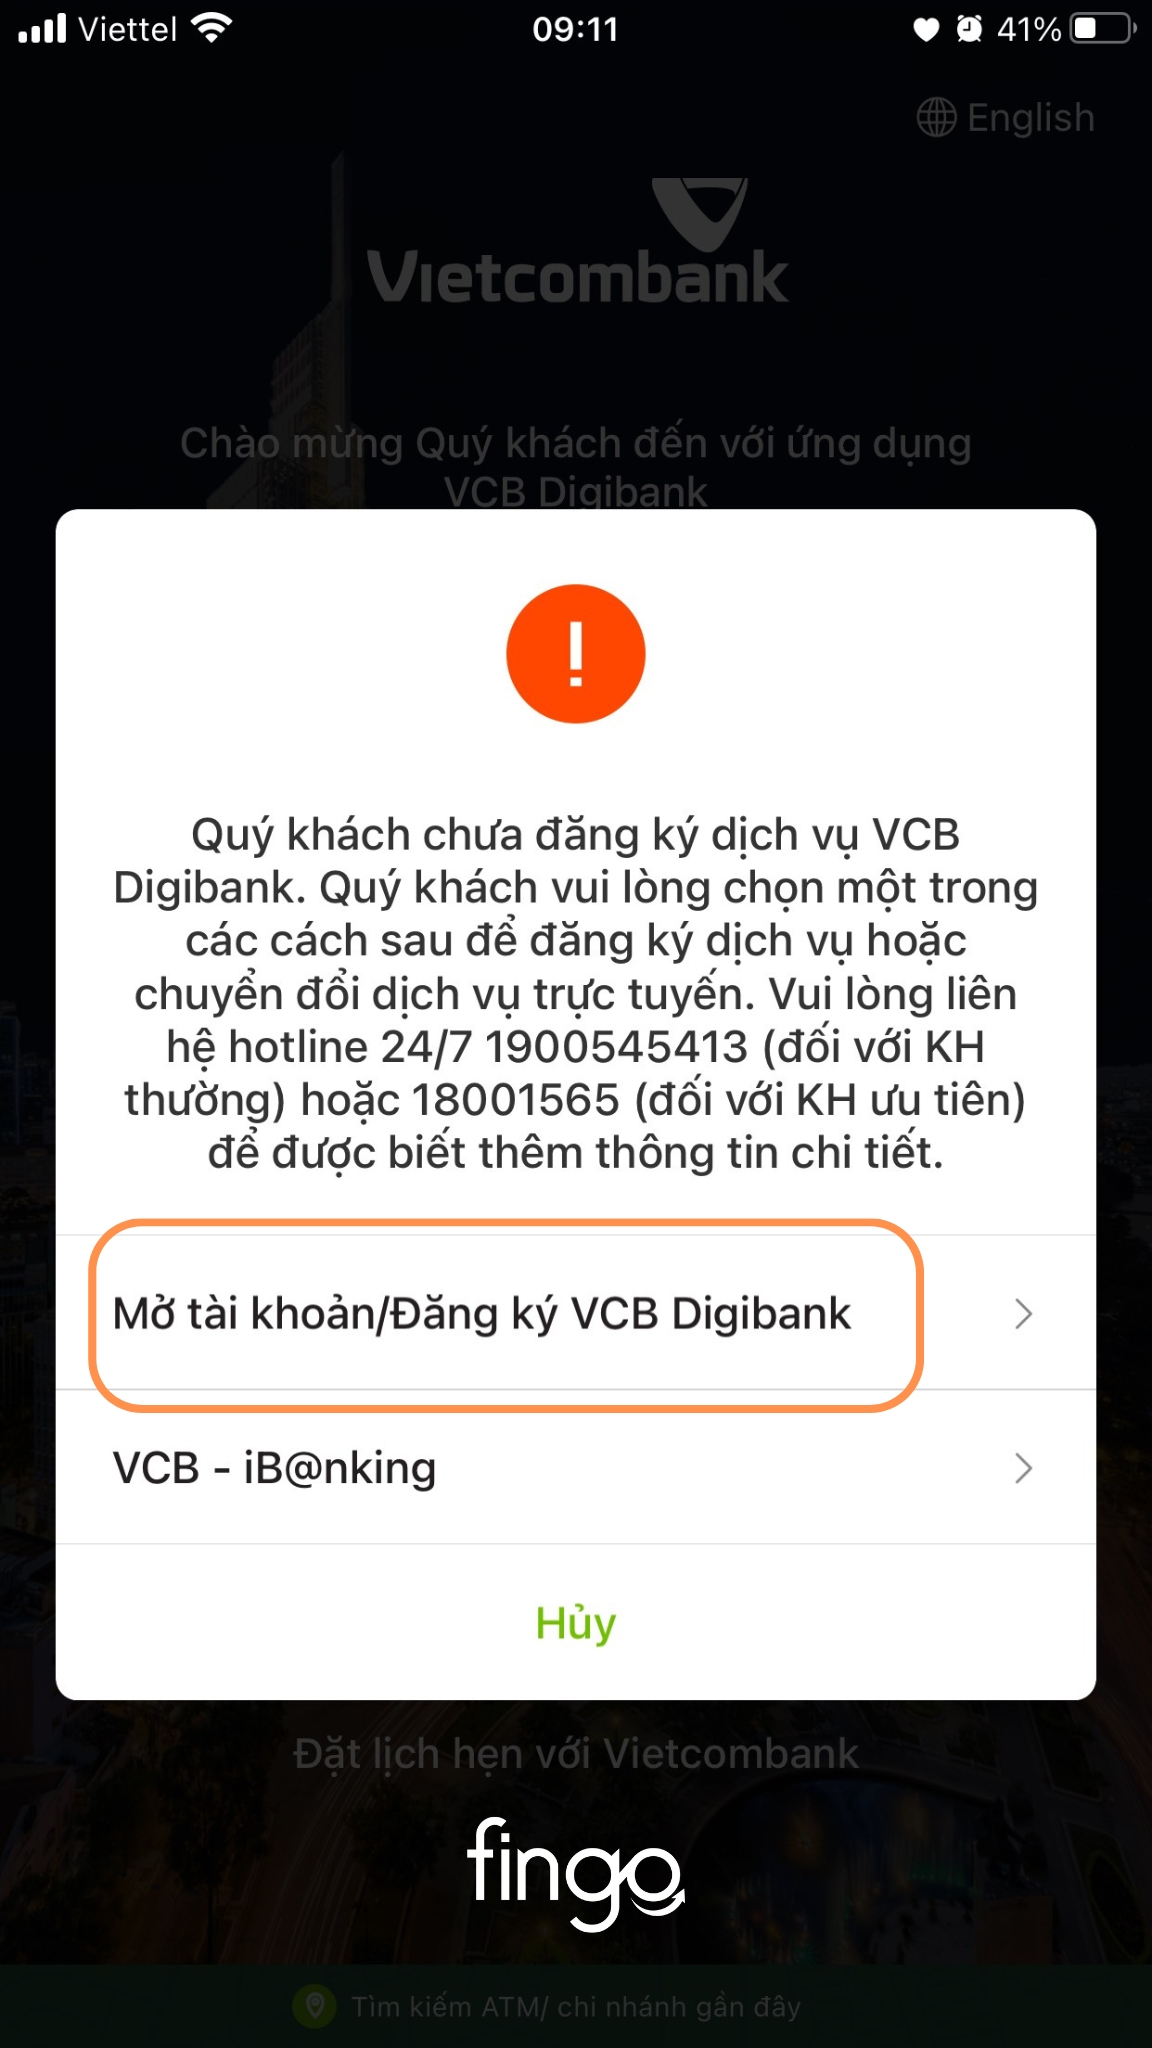 Chọn "Mở tài khoản/Đăng ký VCB Digibank".